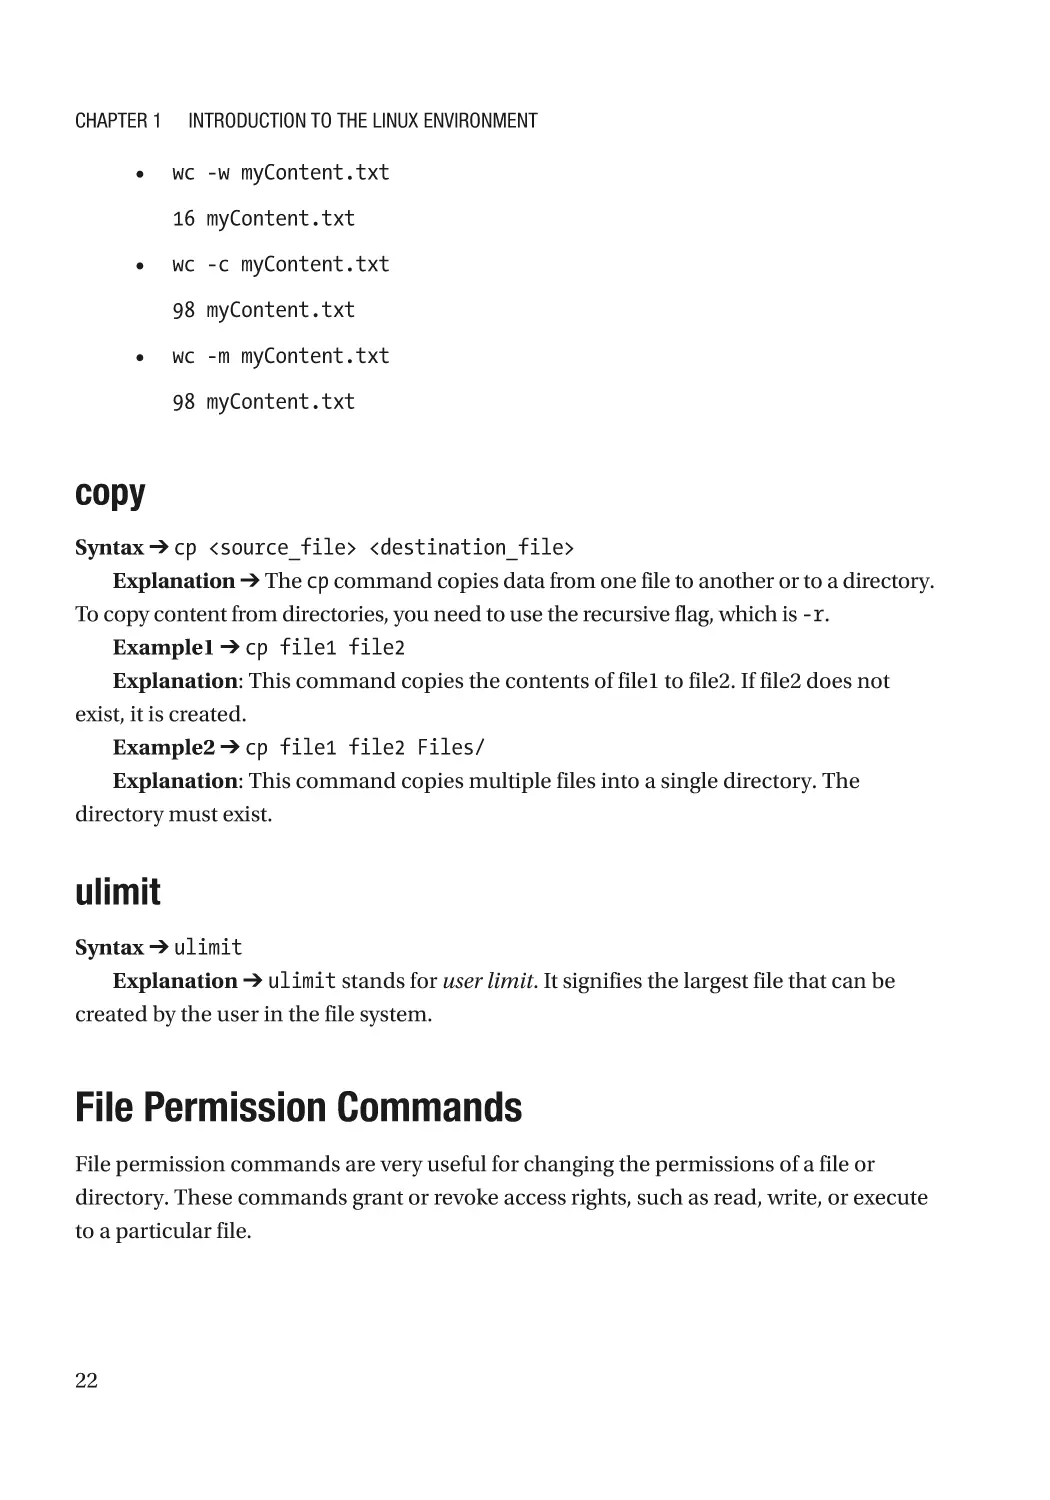 copy
ulimit
File Permission Commands